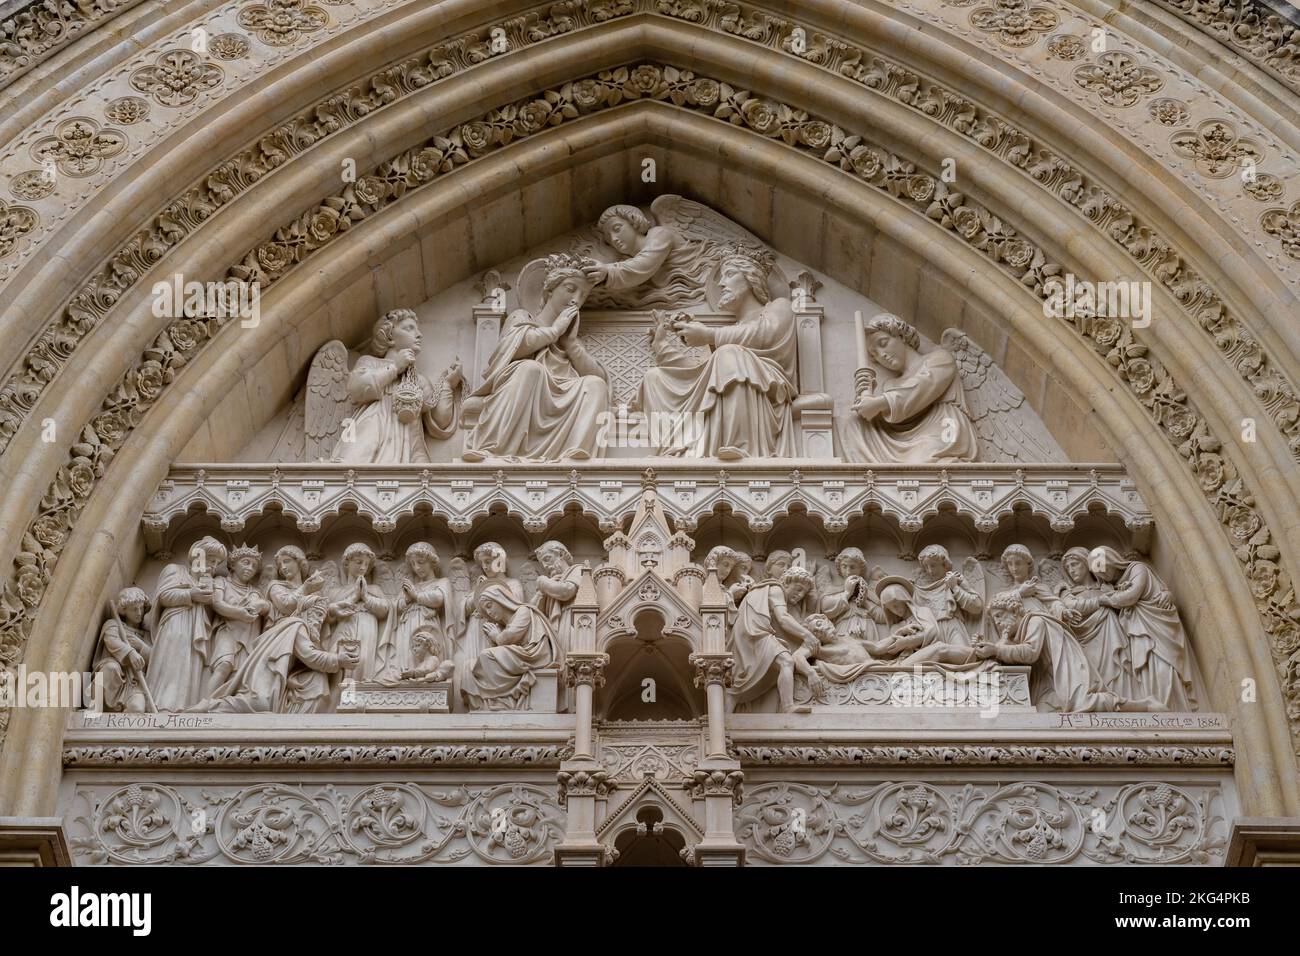 Nahaufnahme des Tympanums mit der Krönung der Jungfrau Maria, Osteingang zum antiken St. Pierre oder St. Peter Kathedrale, Montpellier, Frankreich Stockfoto